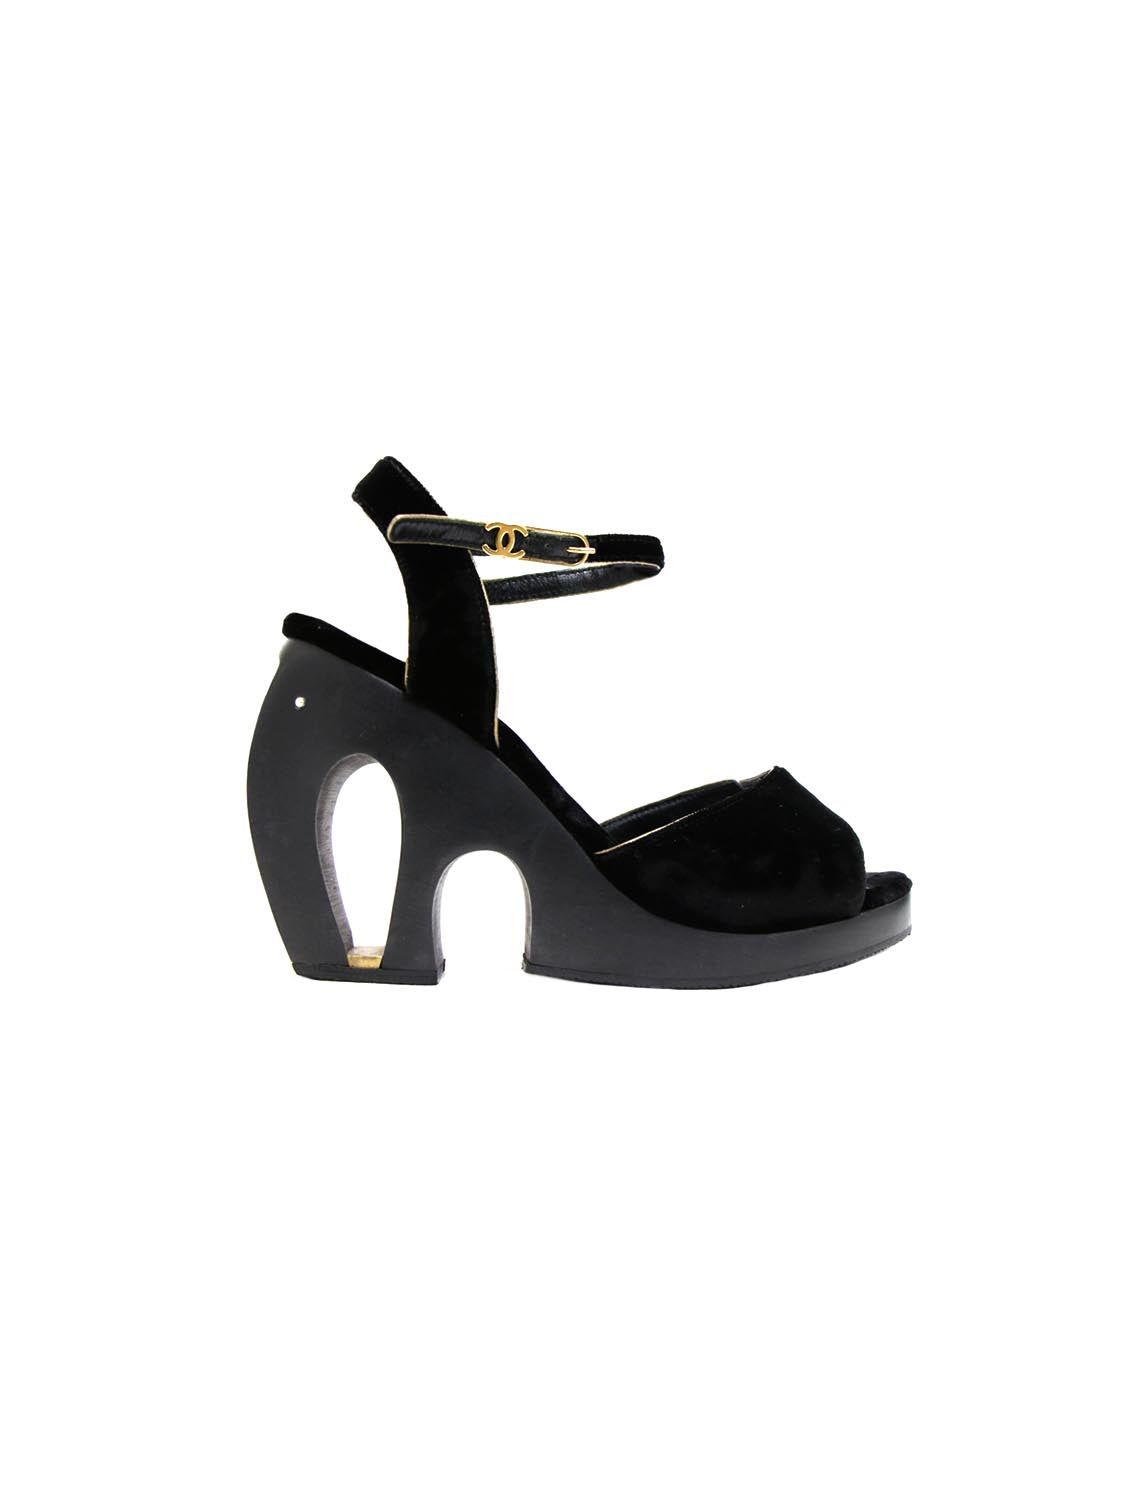 CHANEL, Shoes, Vintage Chanel Black Quilted Leather Wood Heel Slides  Clogs Platform Sandals